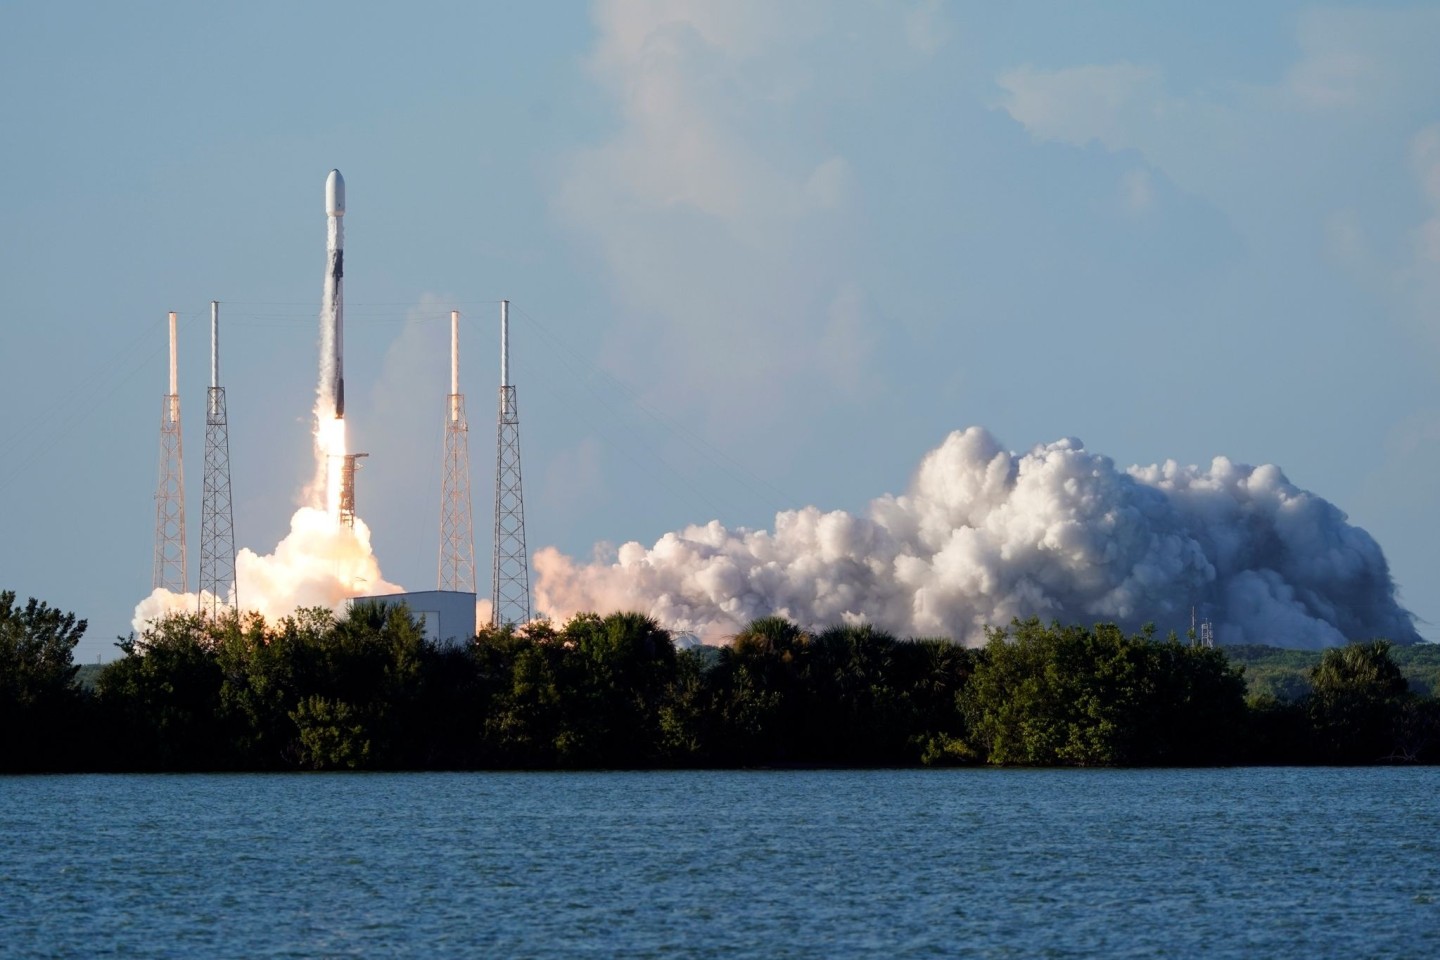 Eine SpaceX Falcon 9 Rakete mit dem koreanischen Pathfinder Lunar Orbiter hebt ab.